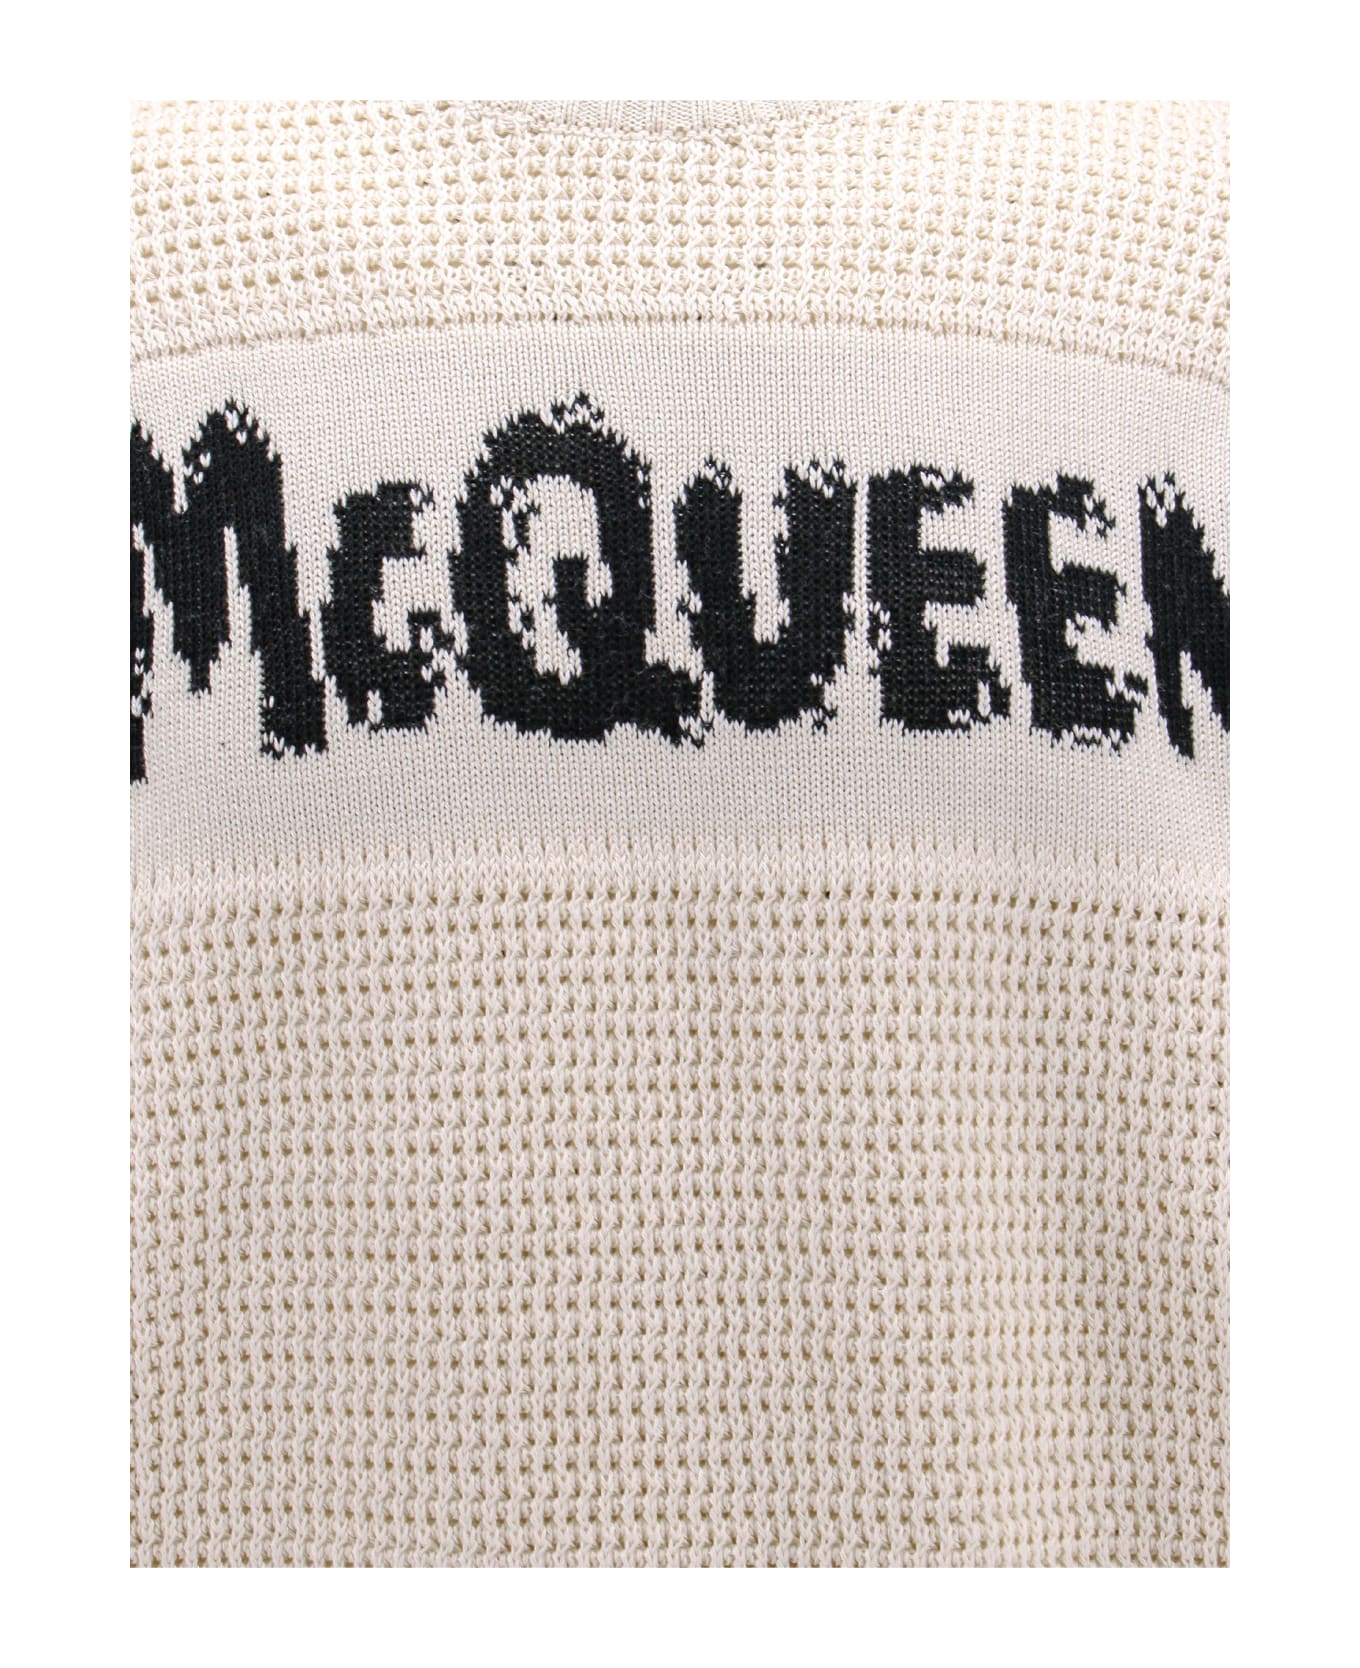 Alexander McQueen Sweater - Beige